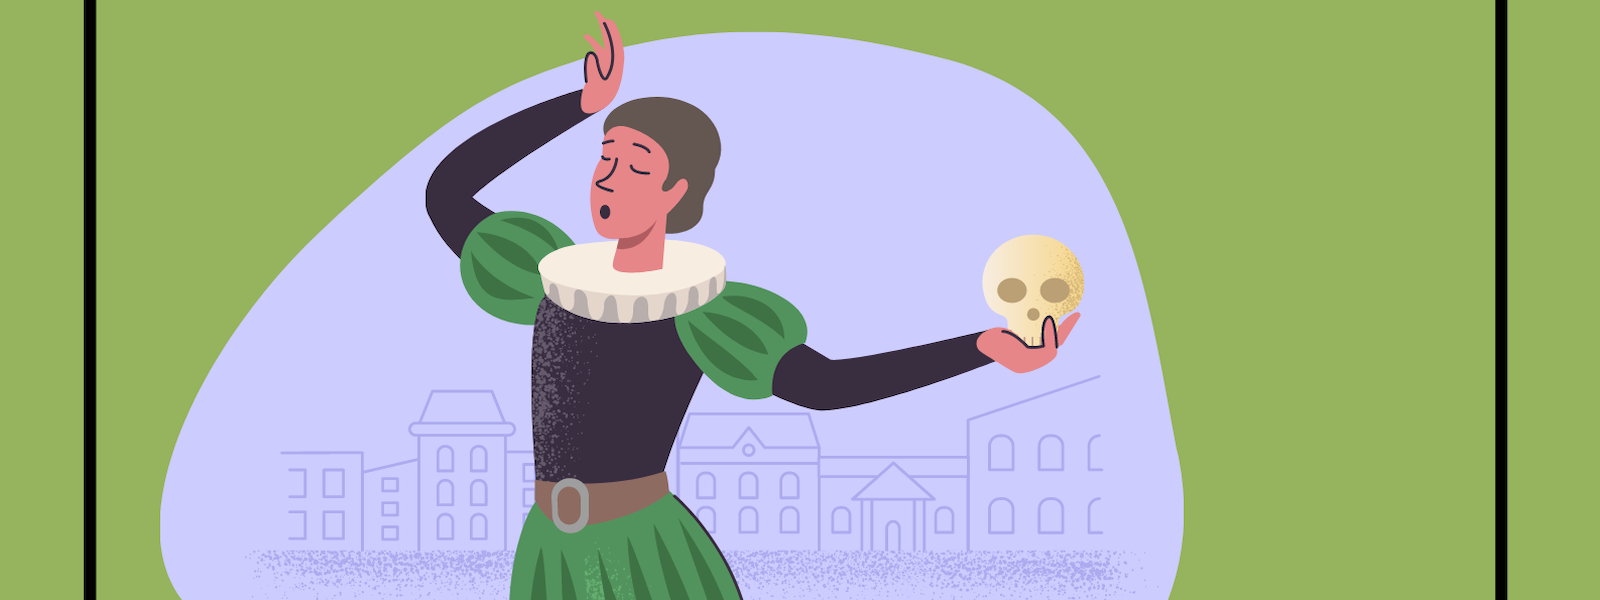 Animated Romeo holding a skull